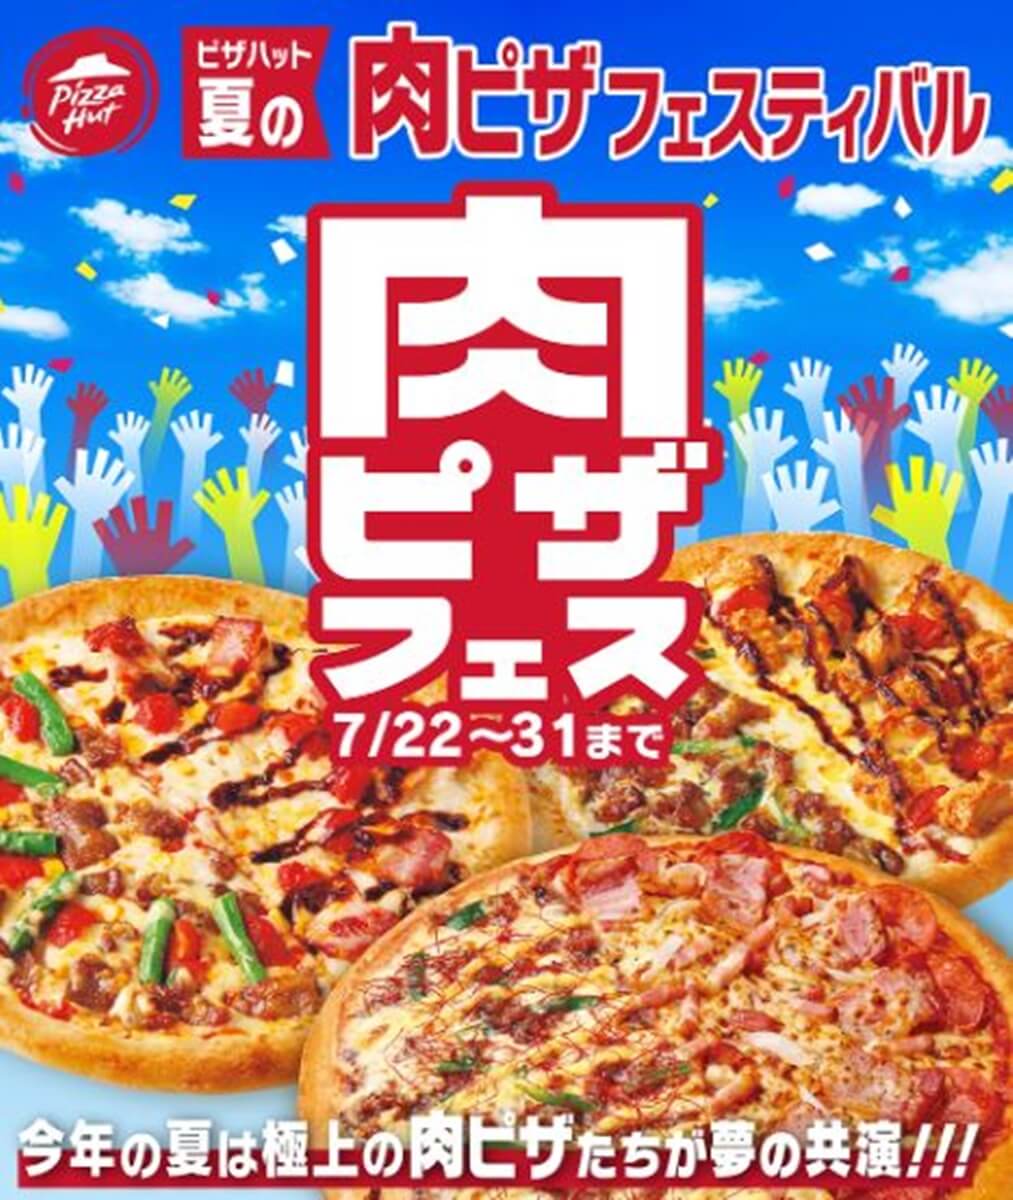 ピザハット-肉フェス